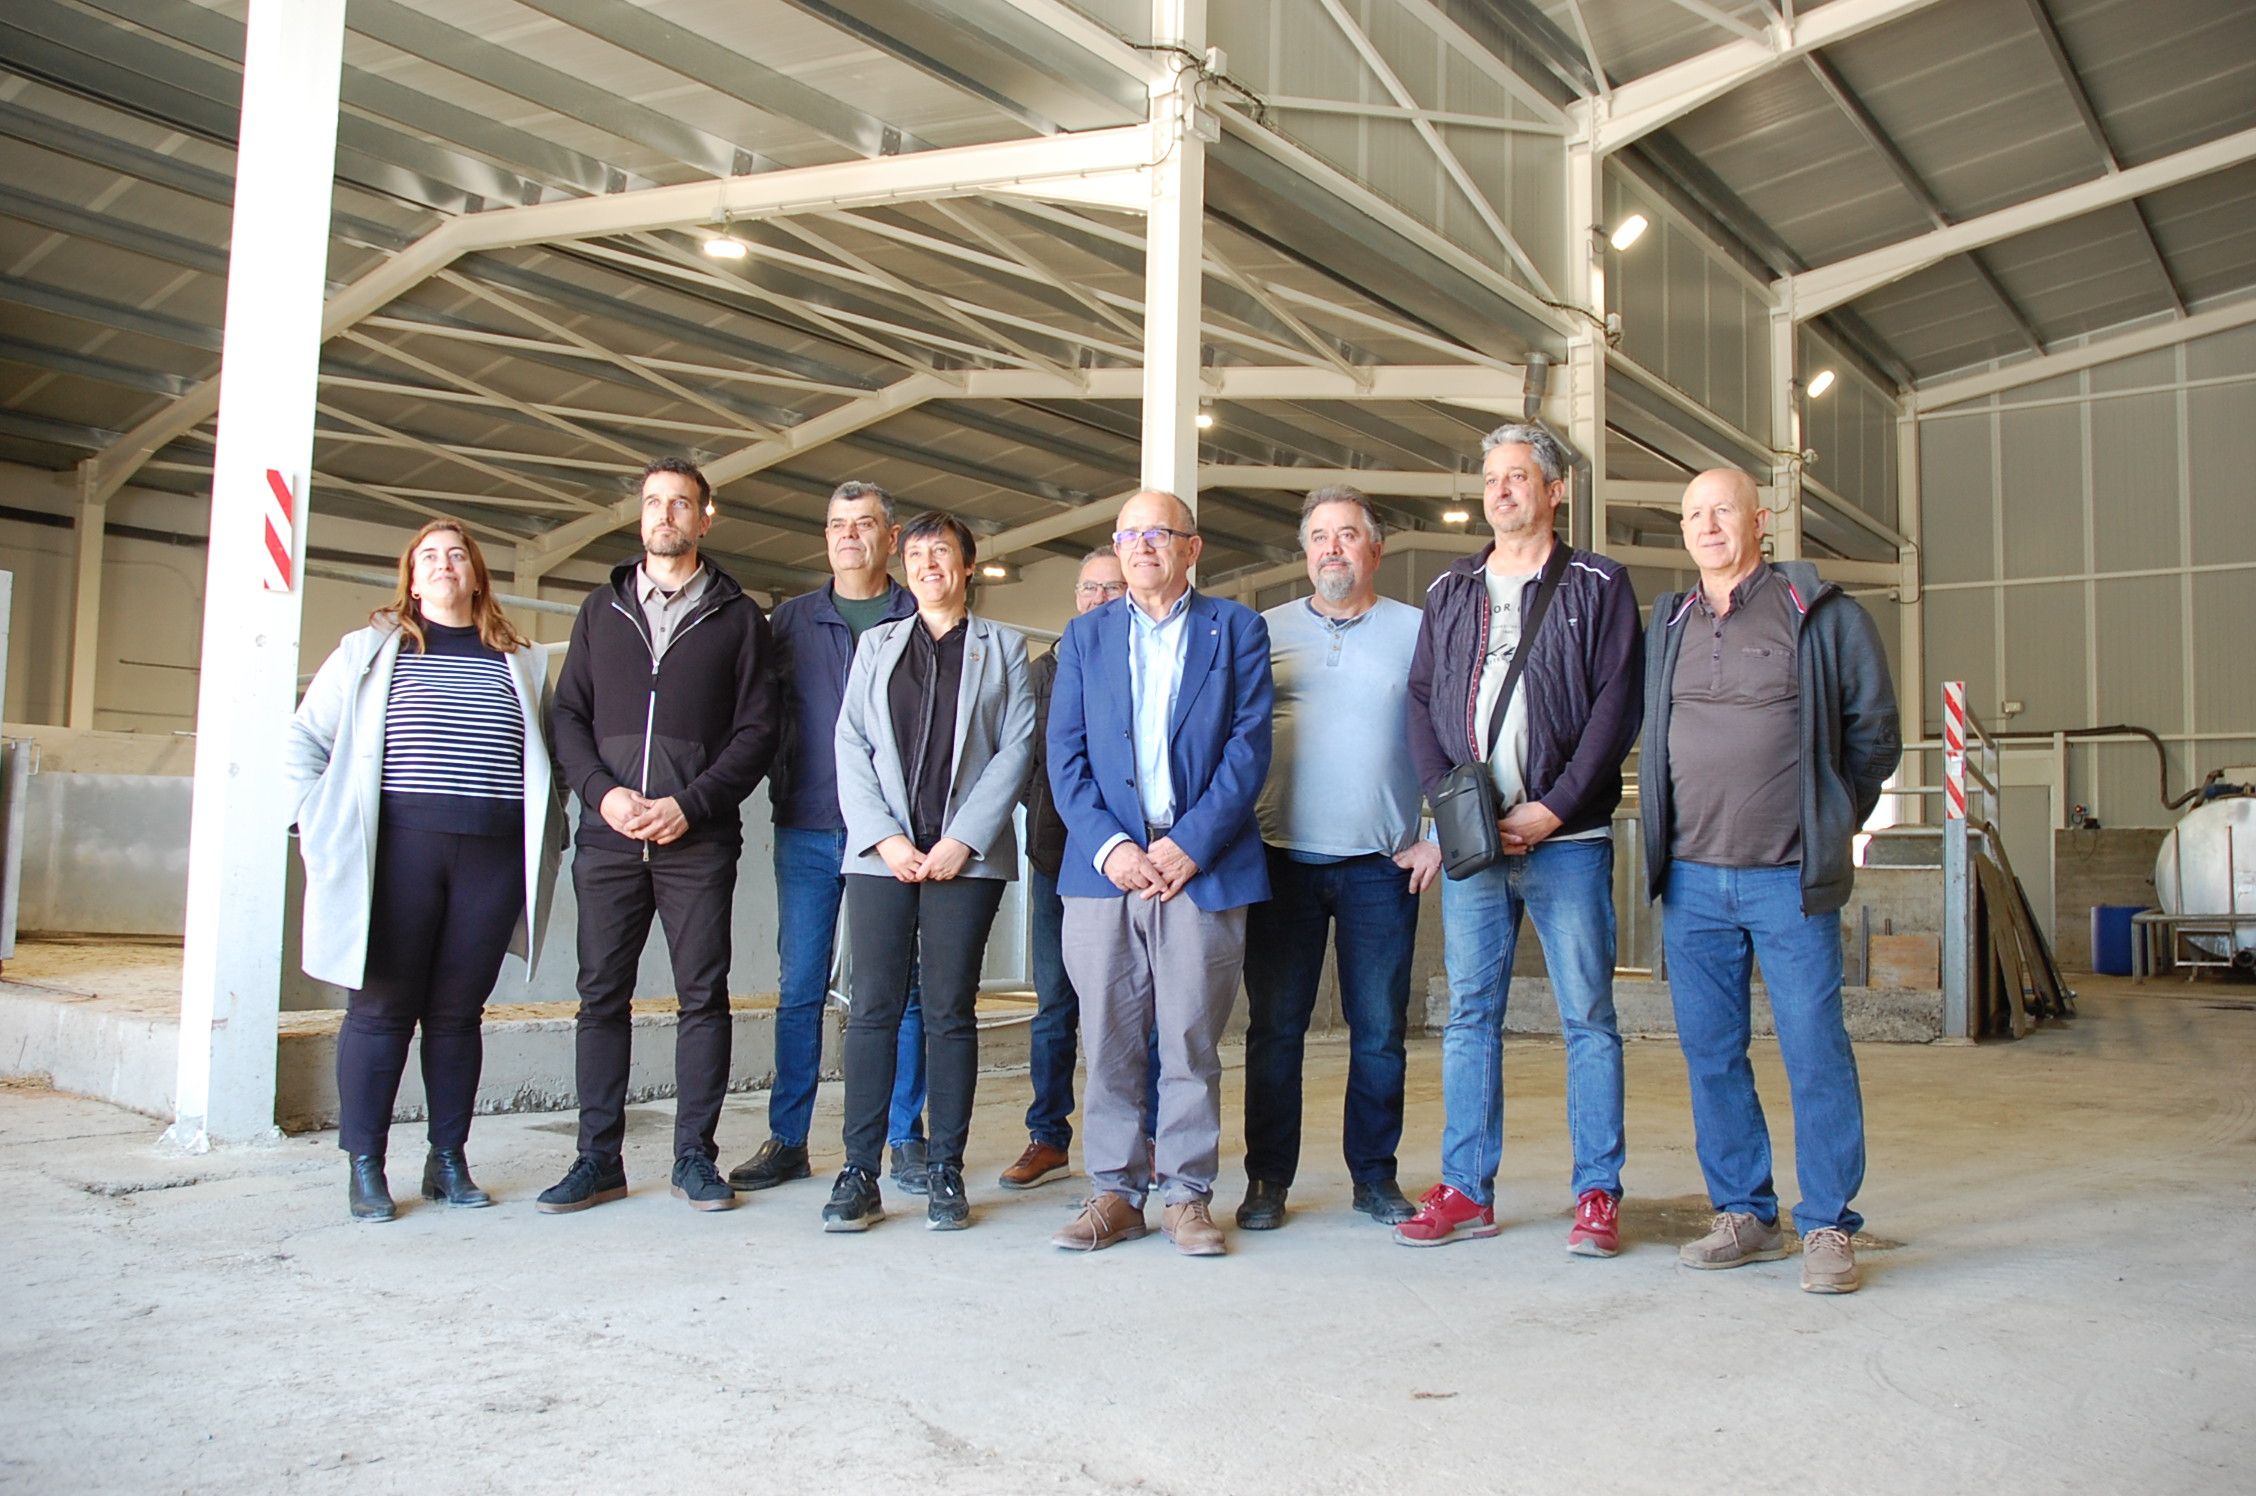 Representants d'Acció Climàtica han visitat les instal·lacions de l'escorxador municipal de Manlleu aquest divendres.